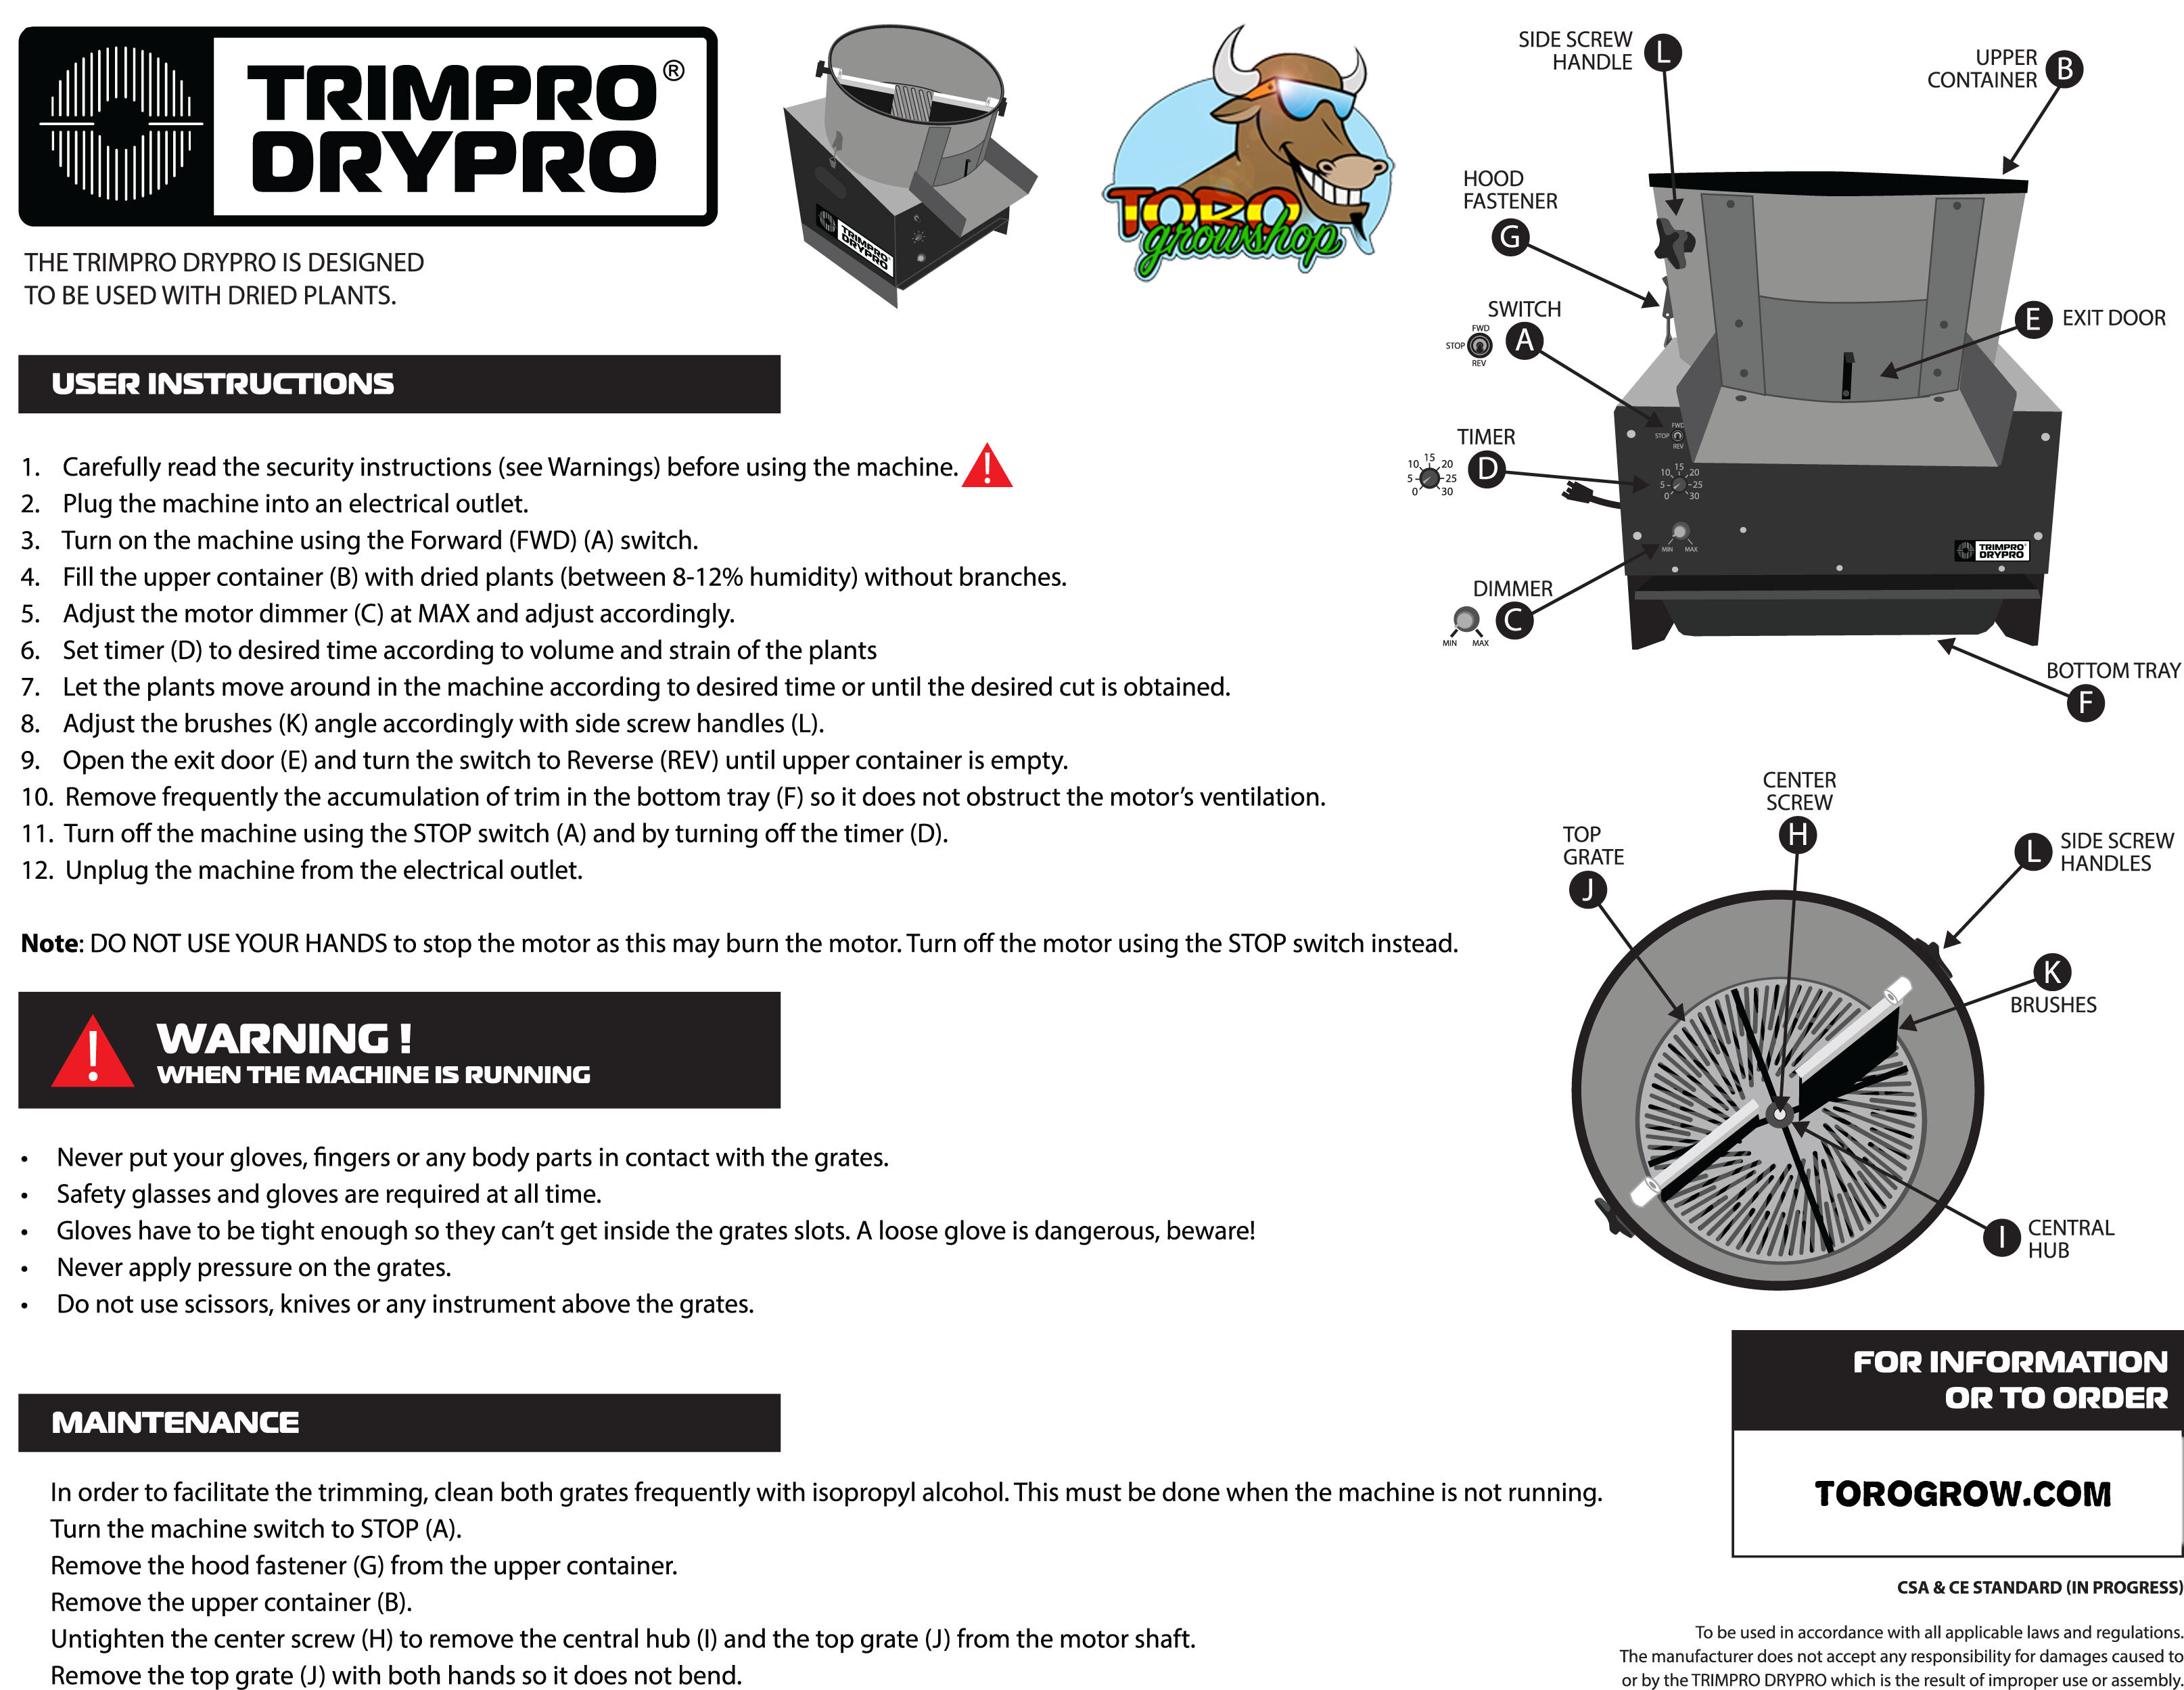 TrimPro DryPro - триммер для маникюра сухих шишек каннабиса (до 5,44 кг. в час)